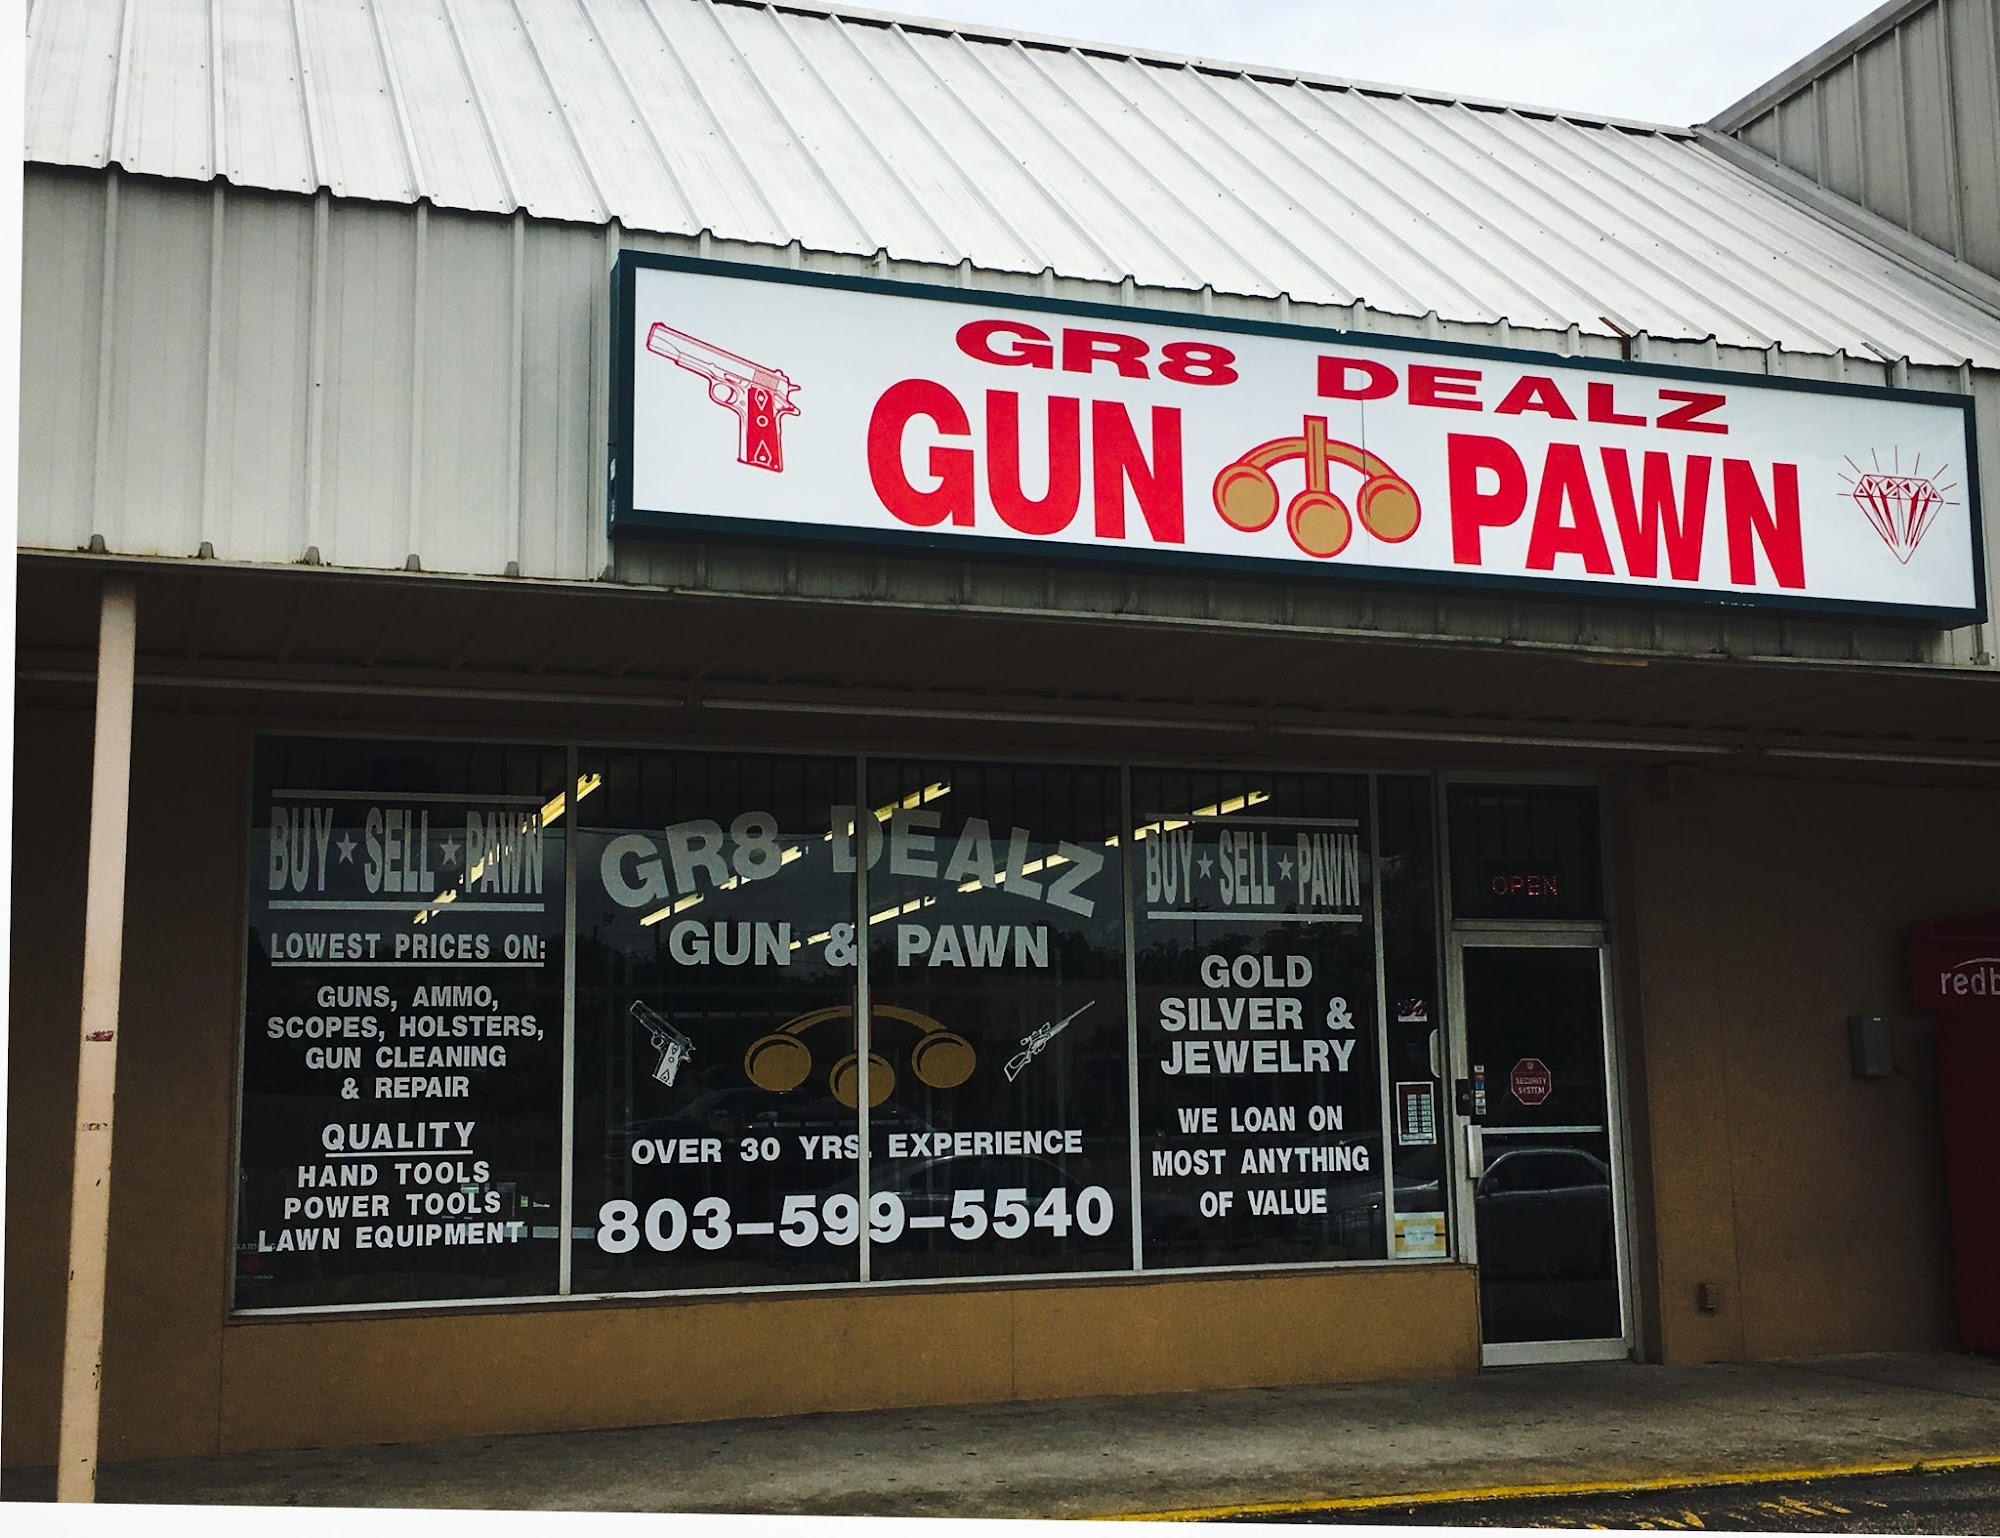 Gr8 Dealz Gun & Pawn